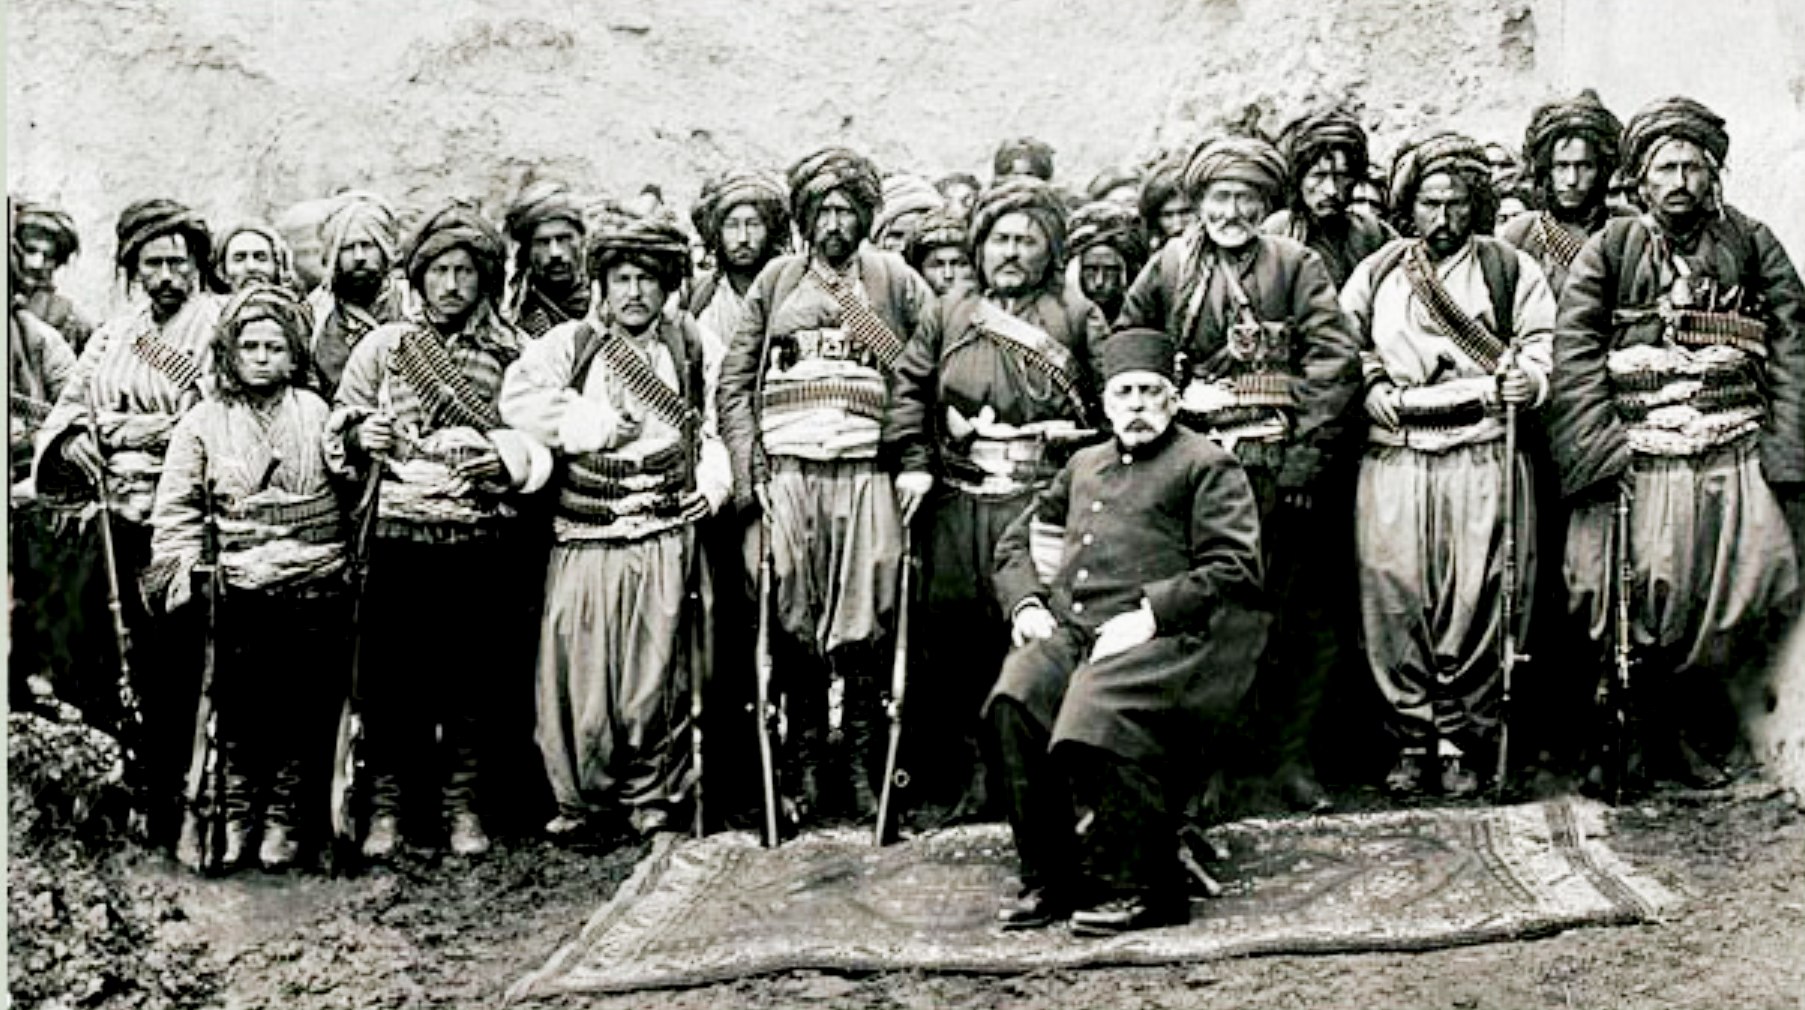 1877, τοῦρκοι βασιβουζοῦκοι, ἄτακτοι στρατιῶτες τῆς ὀθωμανικῆς αὐτοκρατορίας 